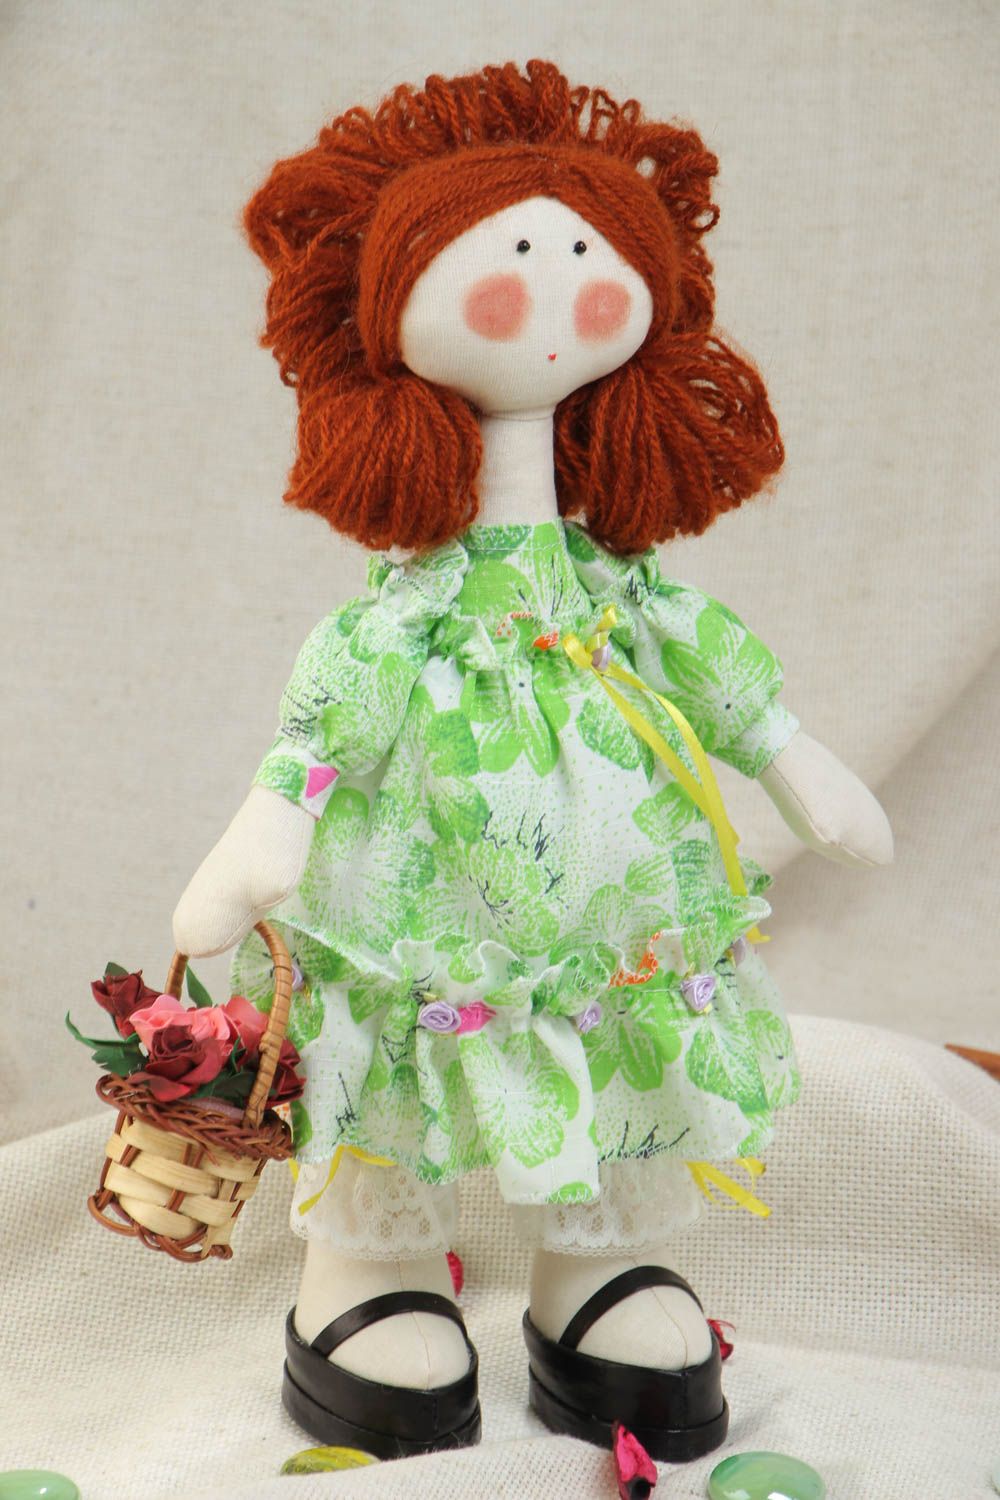 Игрушка кукла из ткани в платье смешная с корзинкой милая небольшая хэнд мейд  фото 1